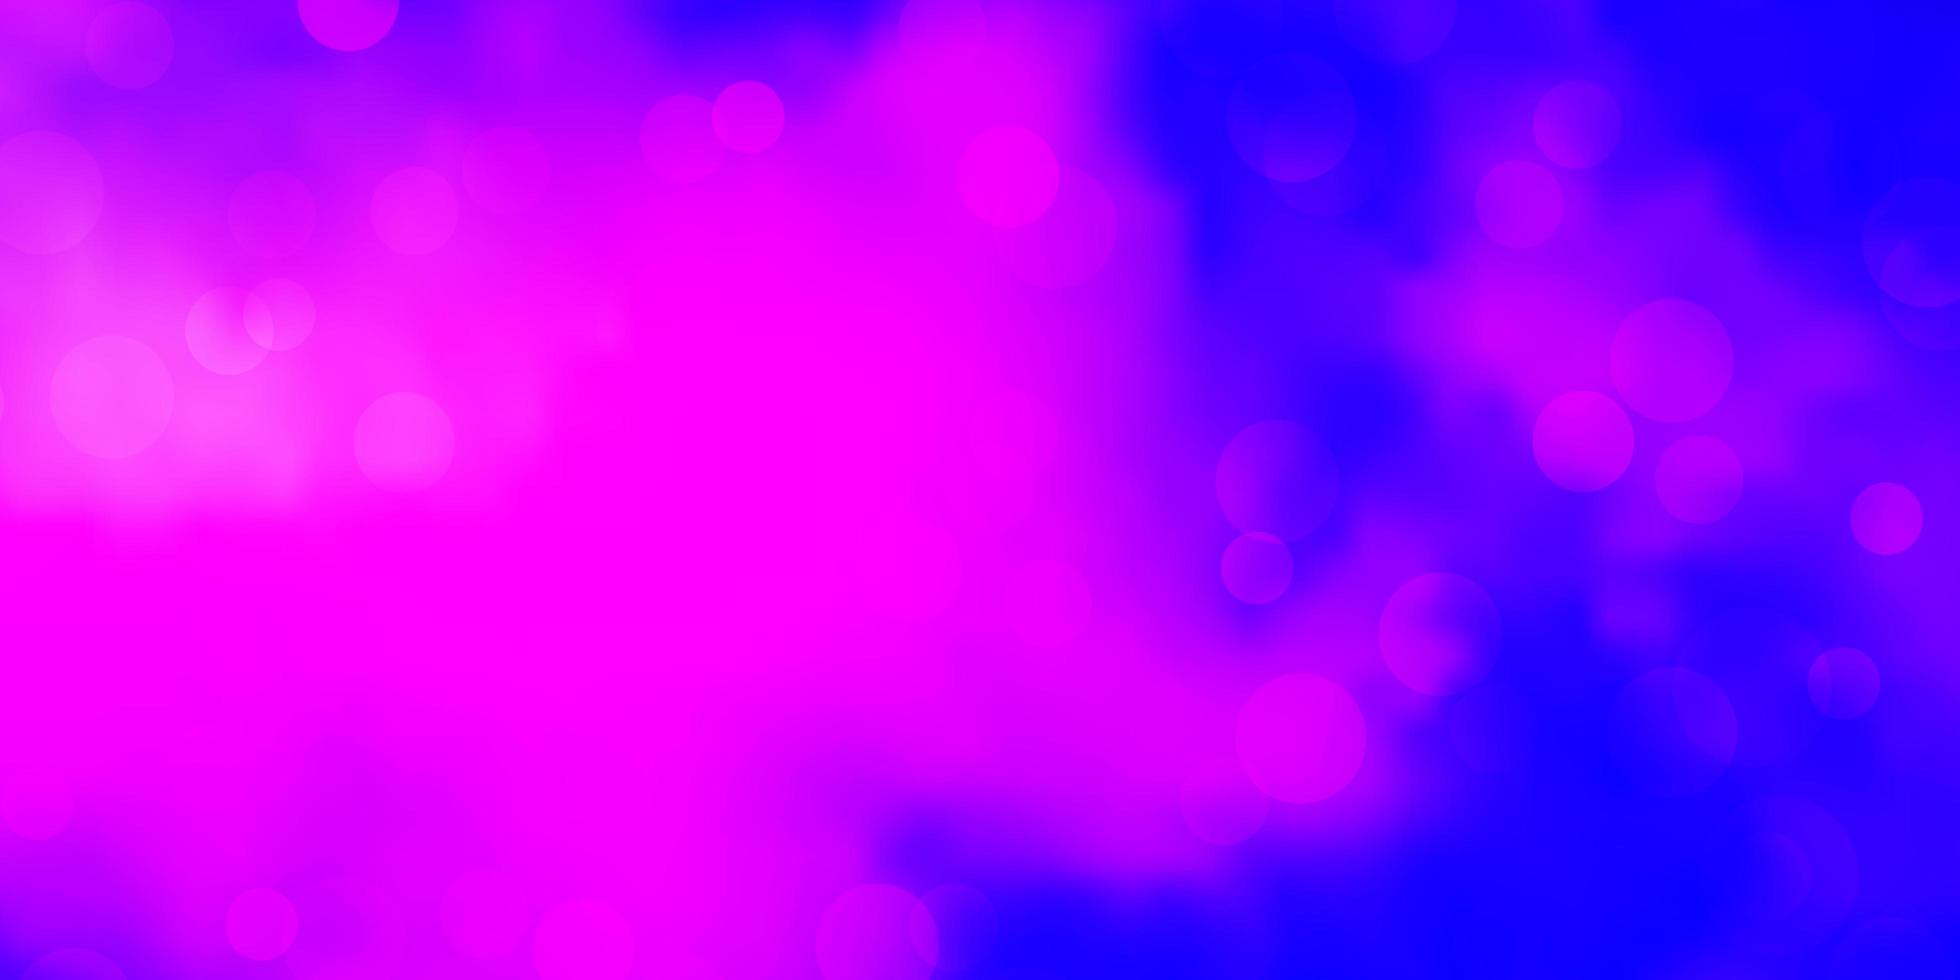 disposition de vecteur violet clair, rose avec des formes de cercle.